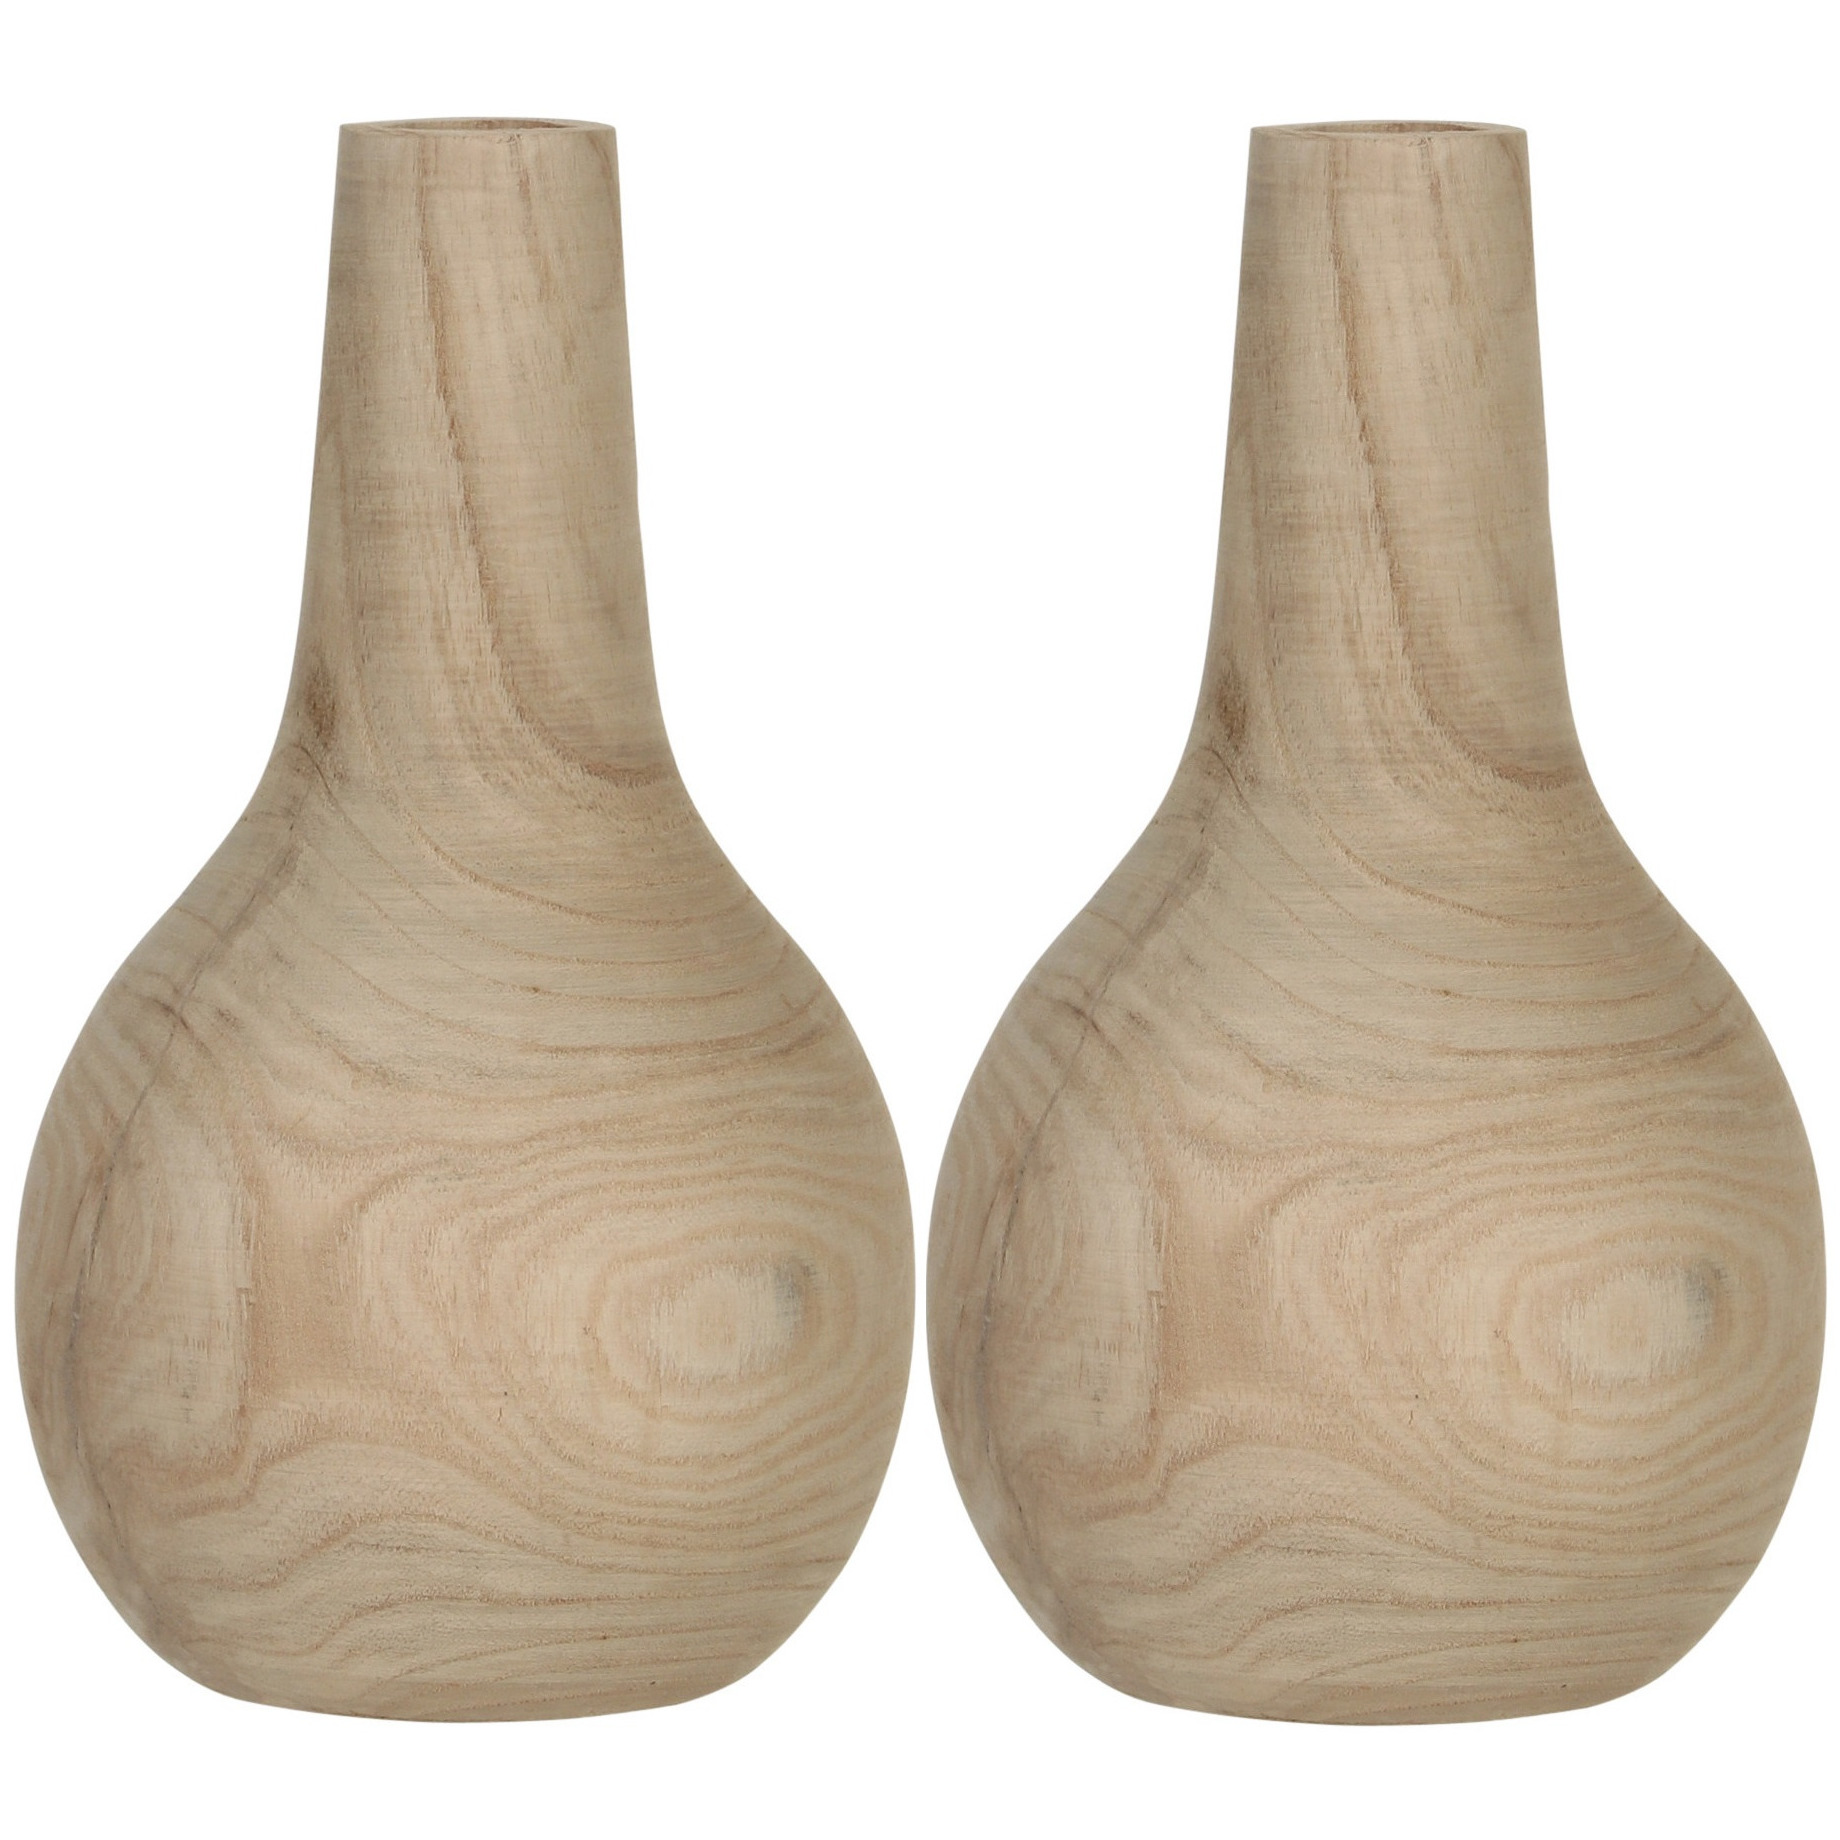 2x Bolvormige decoratie vaas-vazen van hout 28 x 16 cm bruin